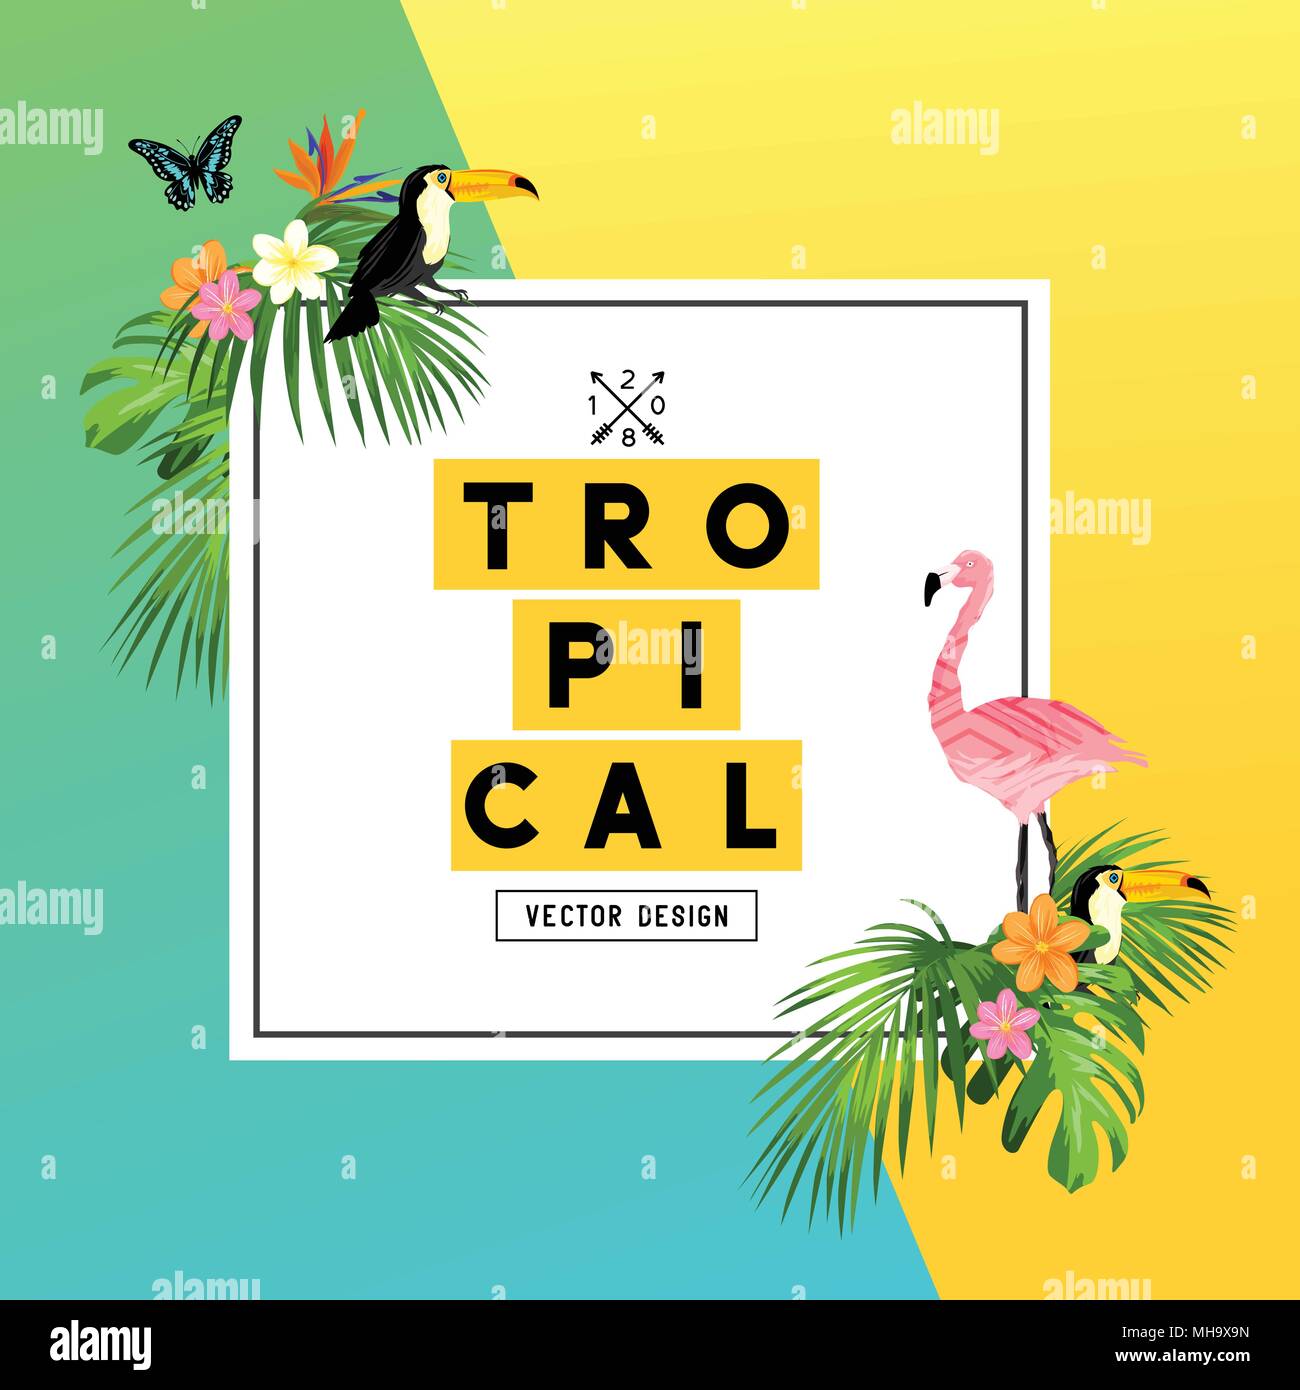 Un été tropical lumineux et colorés avec des oiseaux tropicaux, a young woman in a jungle et feuilles de palmier. vector illustration. Illustration de Vecteur